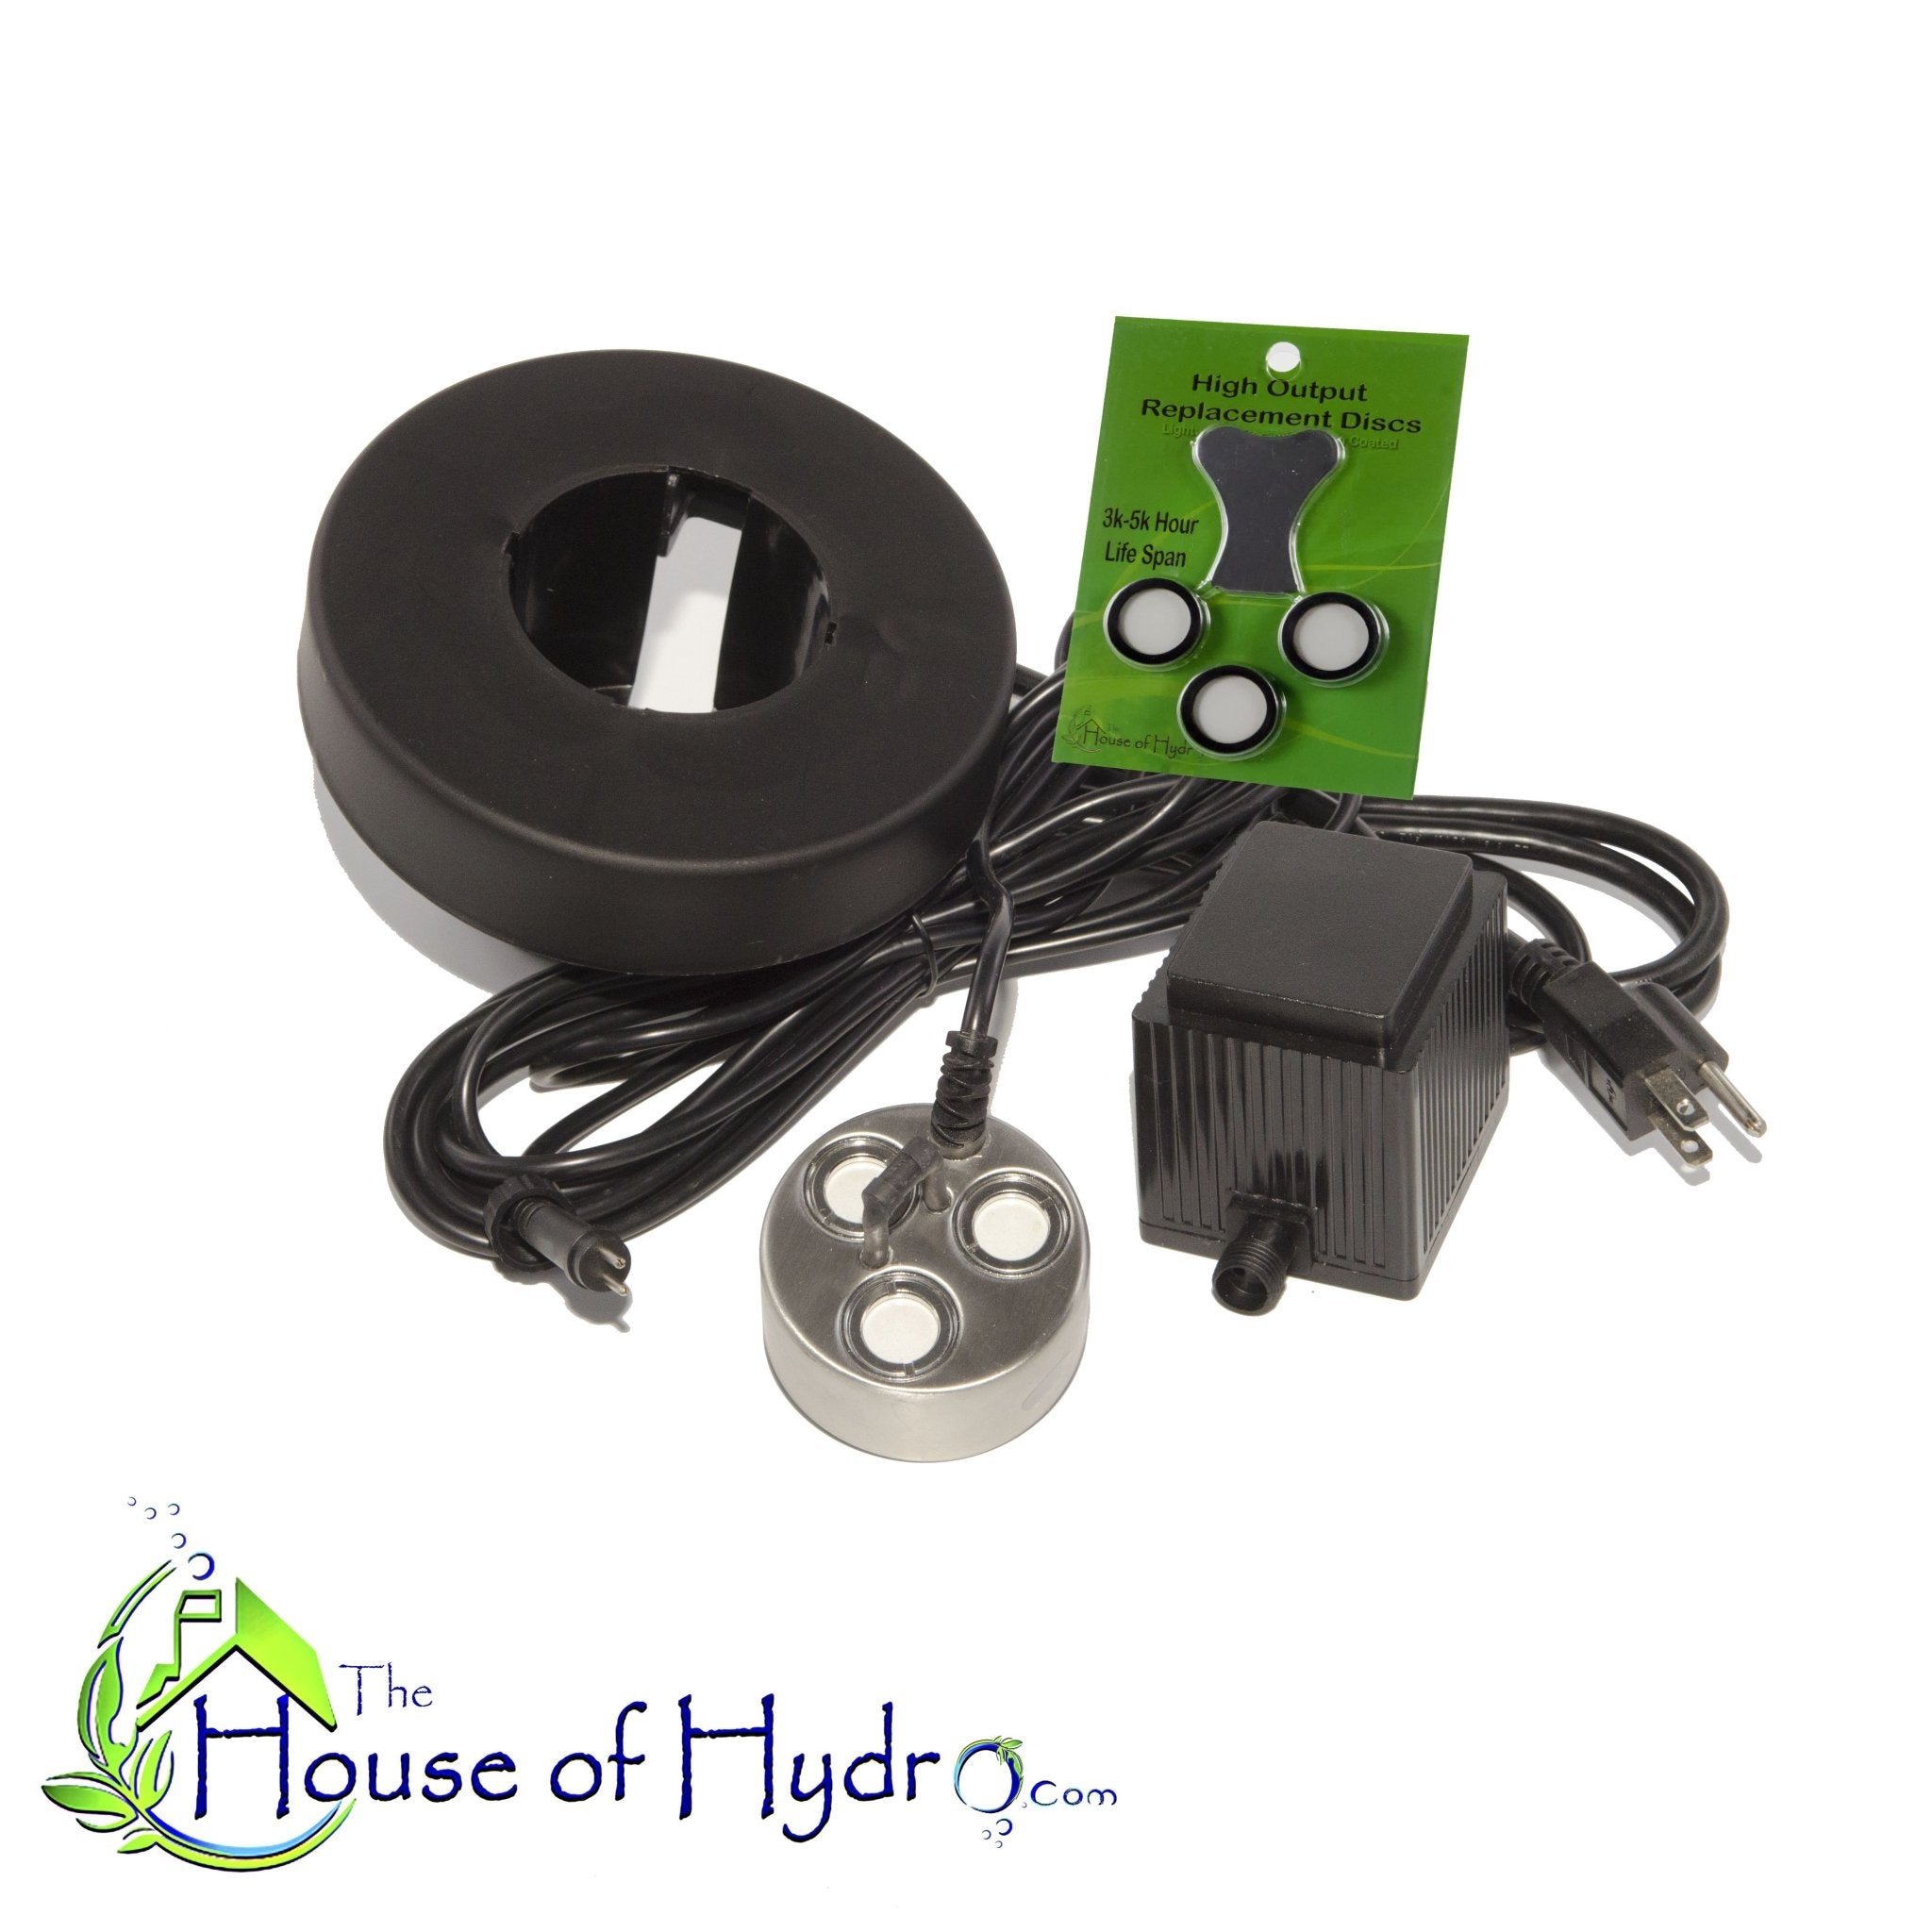 3 Disc Ultrasonic Mist Maker Kit – The House of Hydro